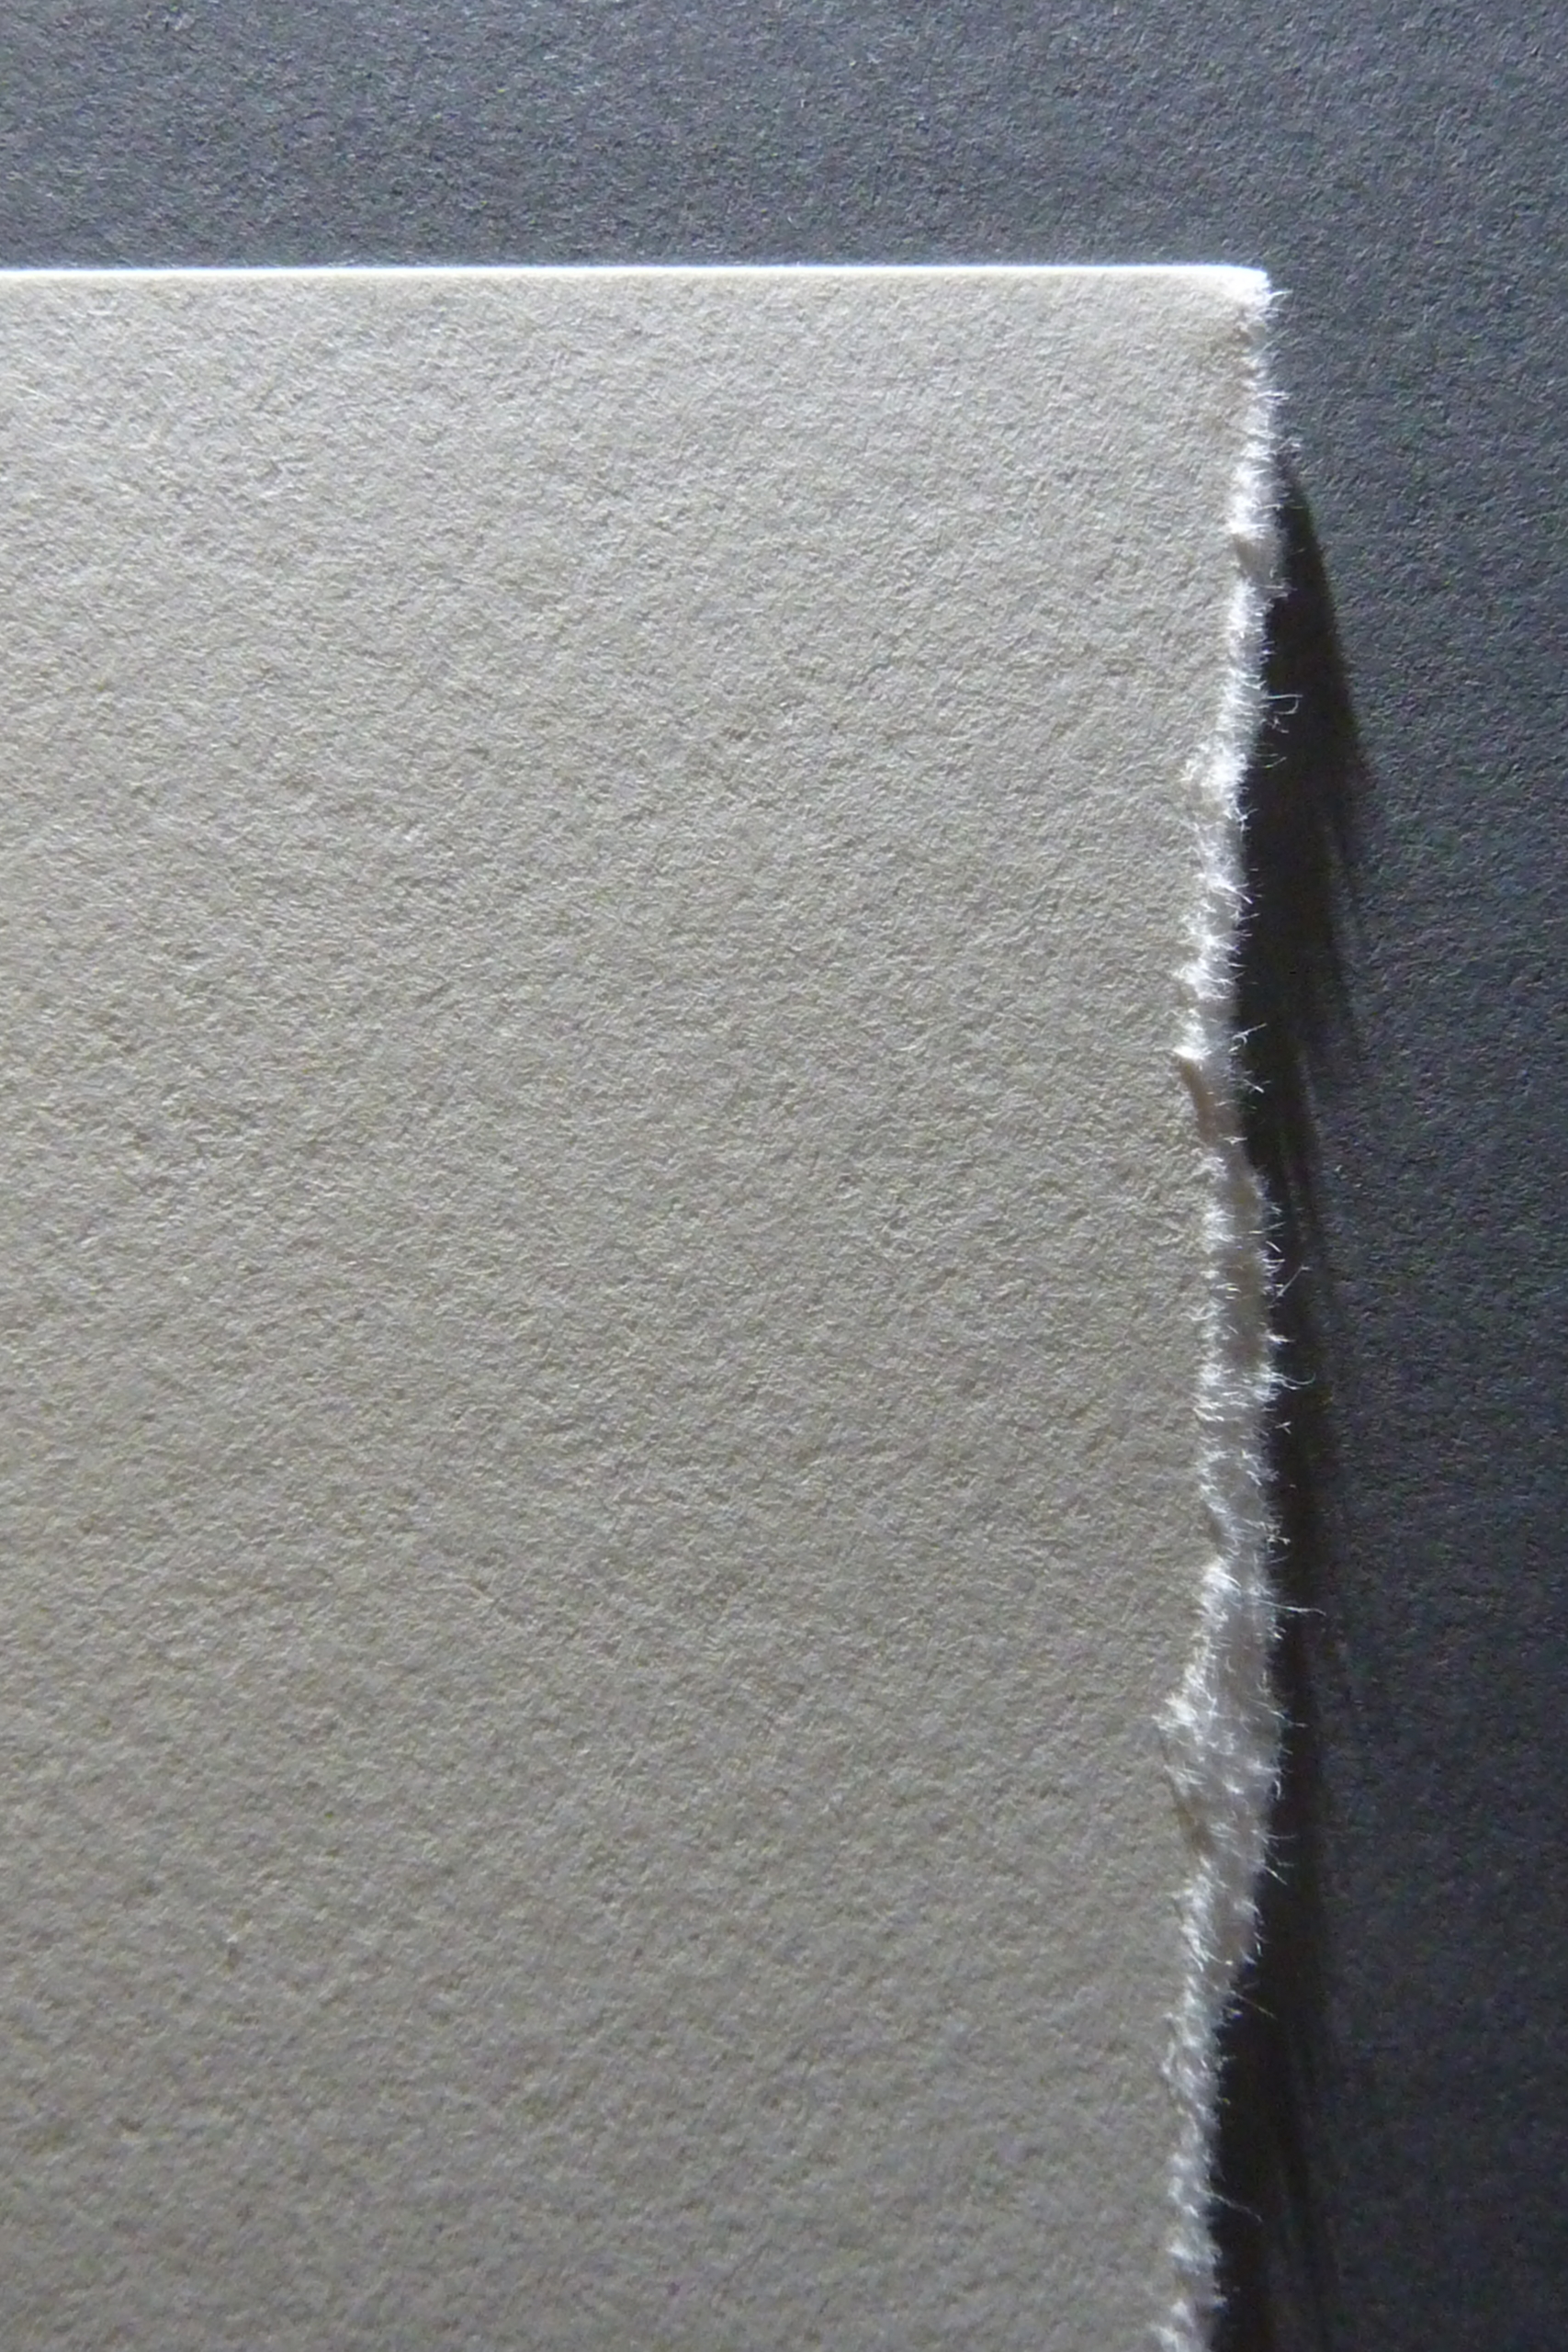 Das Bild zeigt eine gerissene Blattkante an einem Blatt Papier